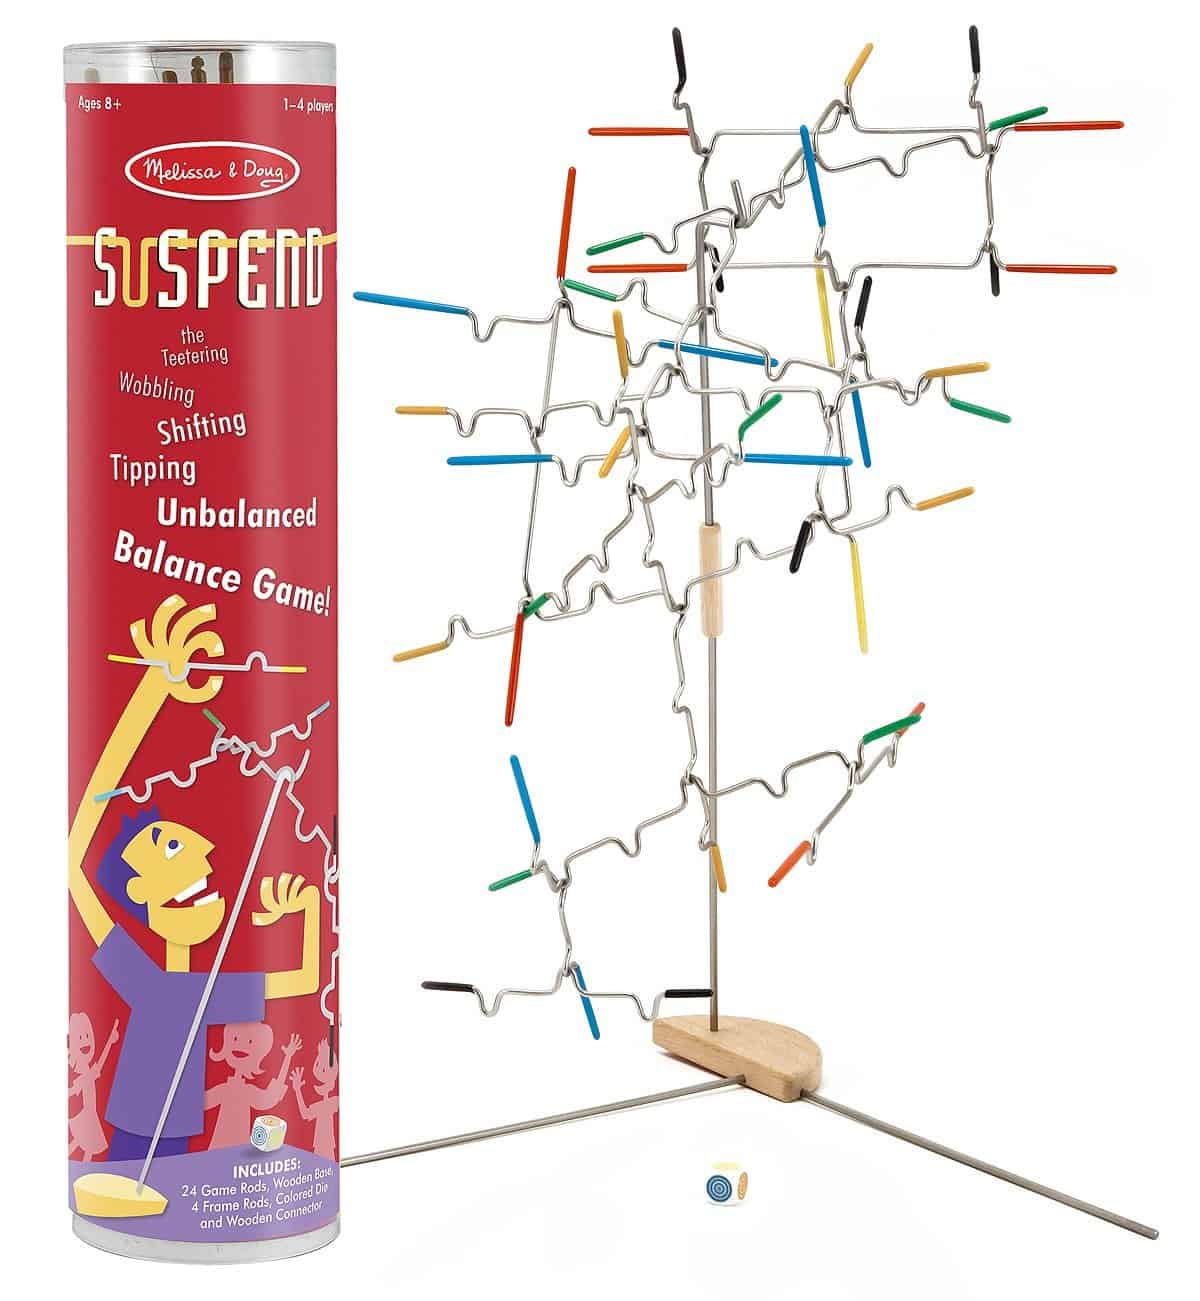 Suspend Balance Game Kid Gift